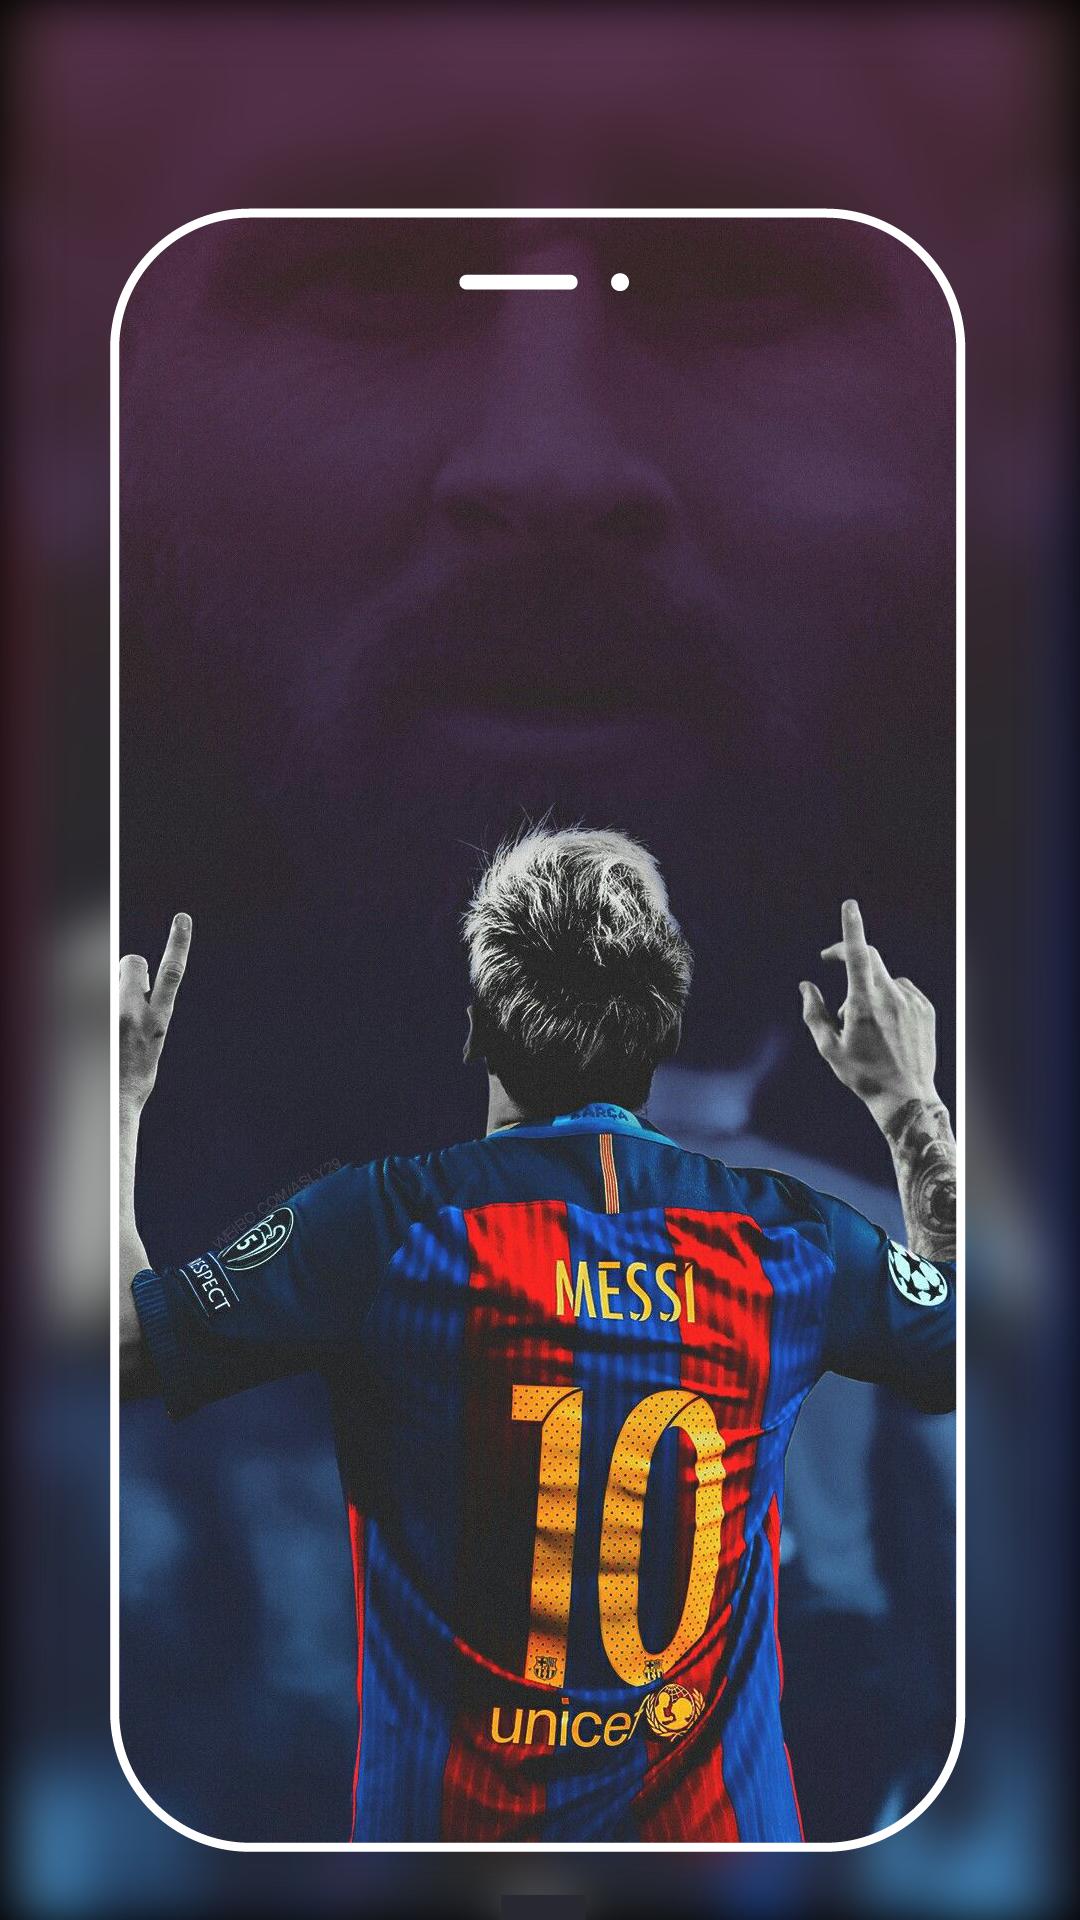 Cùng ngắm nhìn những bức hình nền đẹp nhất của Lionel Messi với độ nét 4k. Đây là những bức ảnh đẹp mắt và tuyệt vời nhất để trang trí cho màn hình của bạn. Khám phá ngay hôm nay và cảm nhận sự khác biệt!